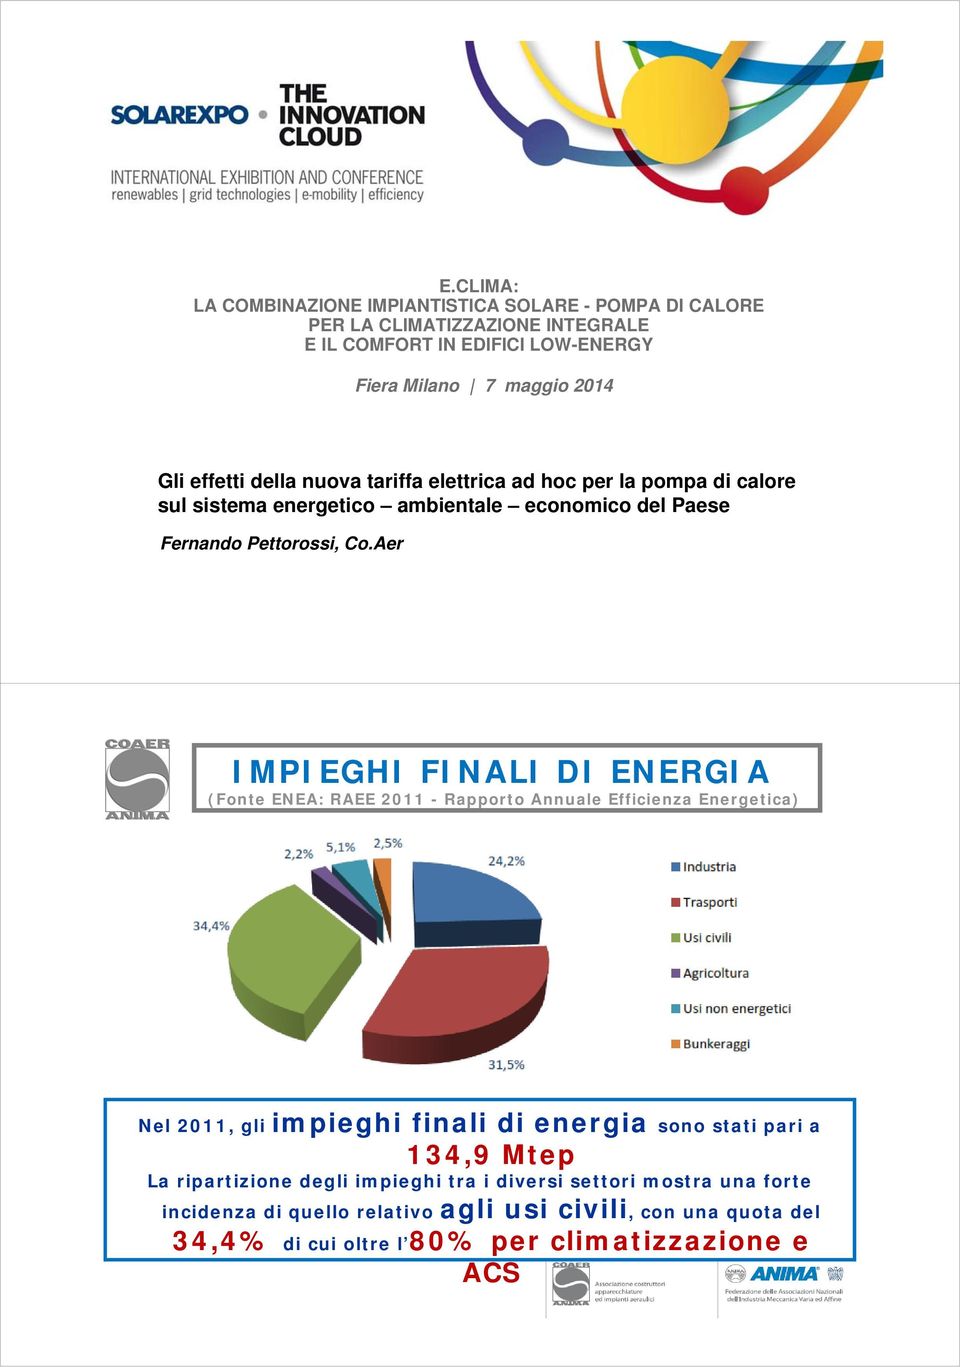 Aer IMPIEGHI FINALI DI ENERGIA (Fonte ENEA: RAEE 2011 - Rapporto Annuale Efficienza Energetica) Nel 2011, gli impieghi finali di energia sono stati pari a 134,9